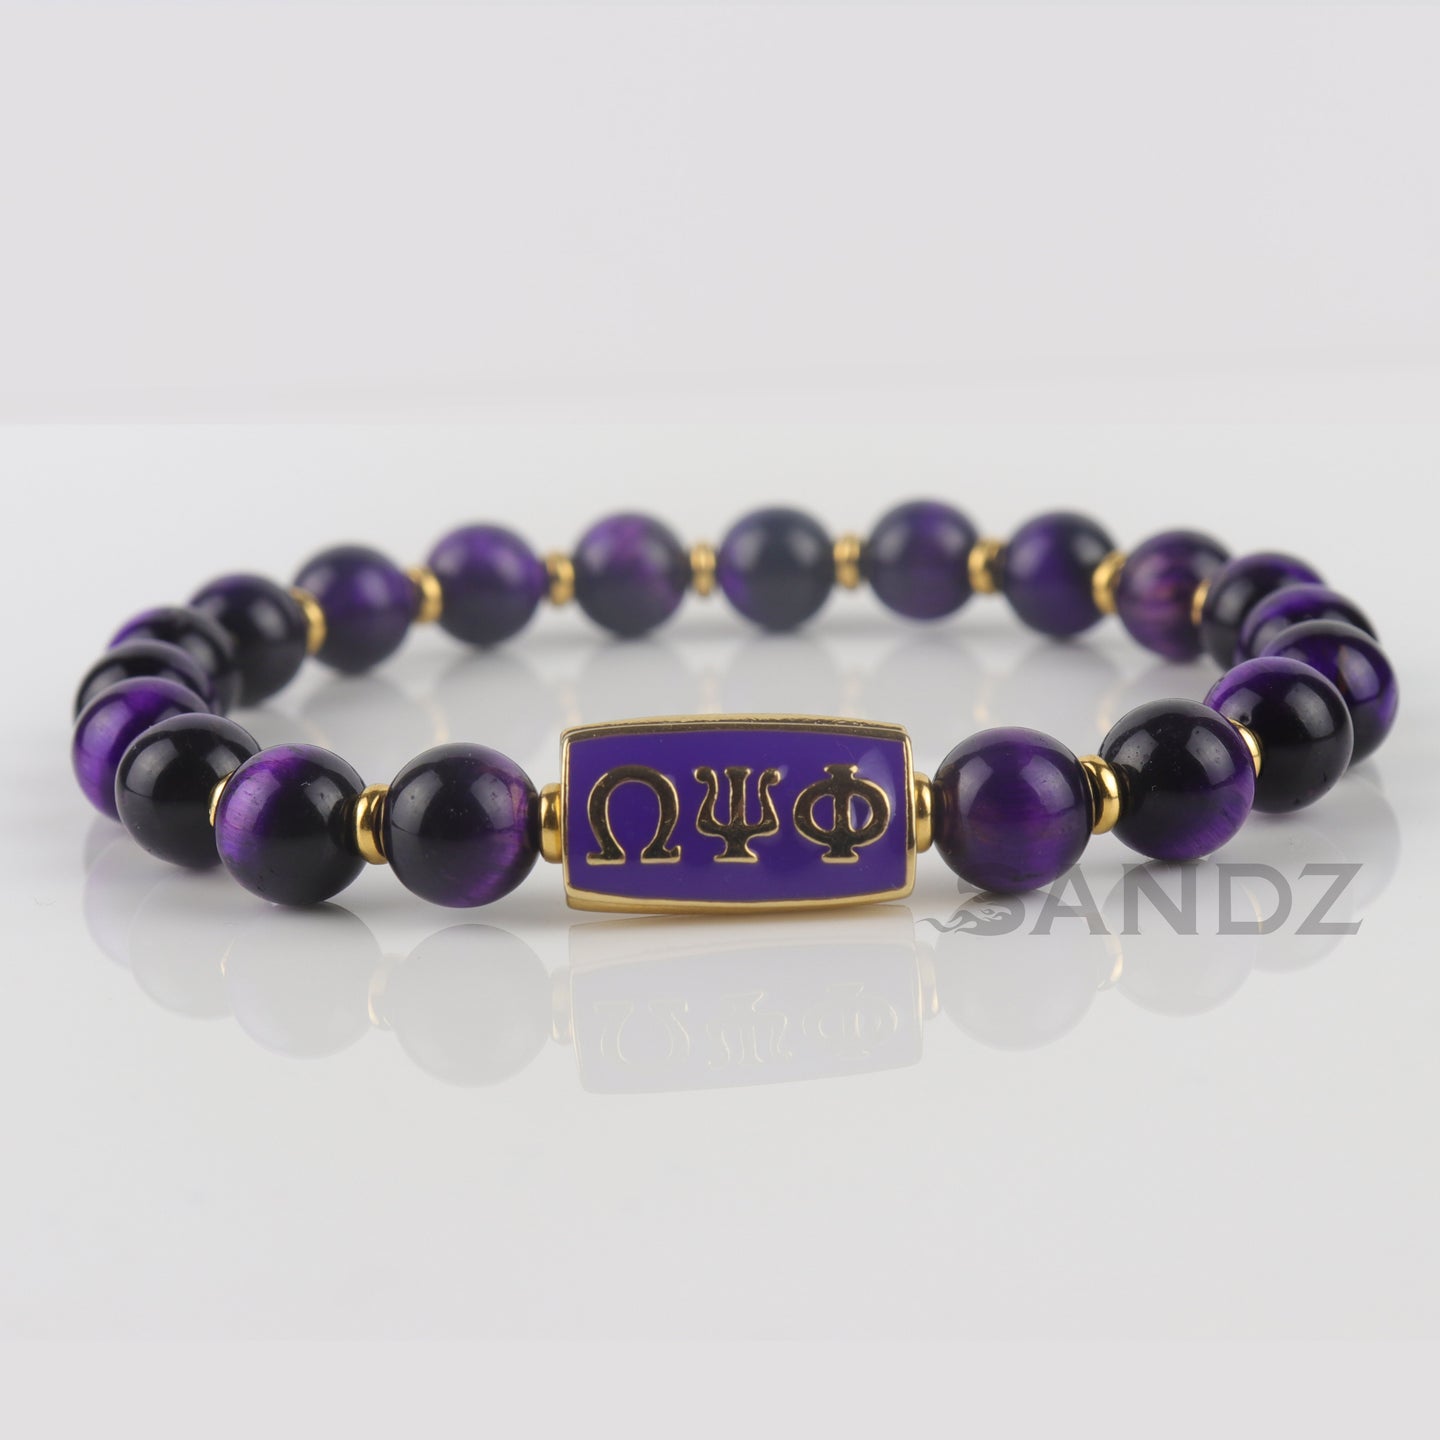 Omega Psi Phi Purple Tiger Eye stone bead bracelet